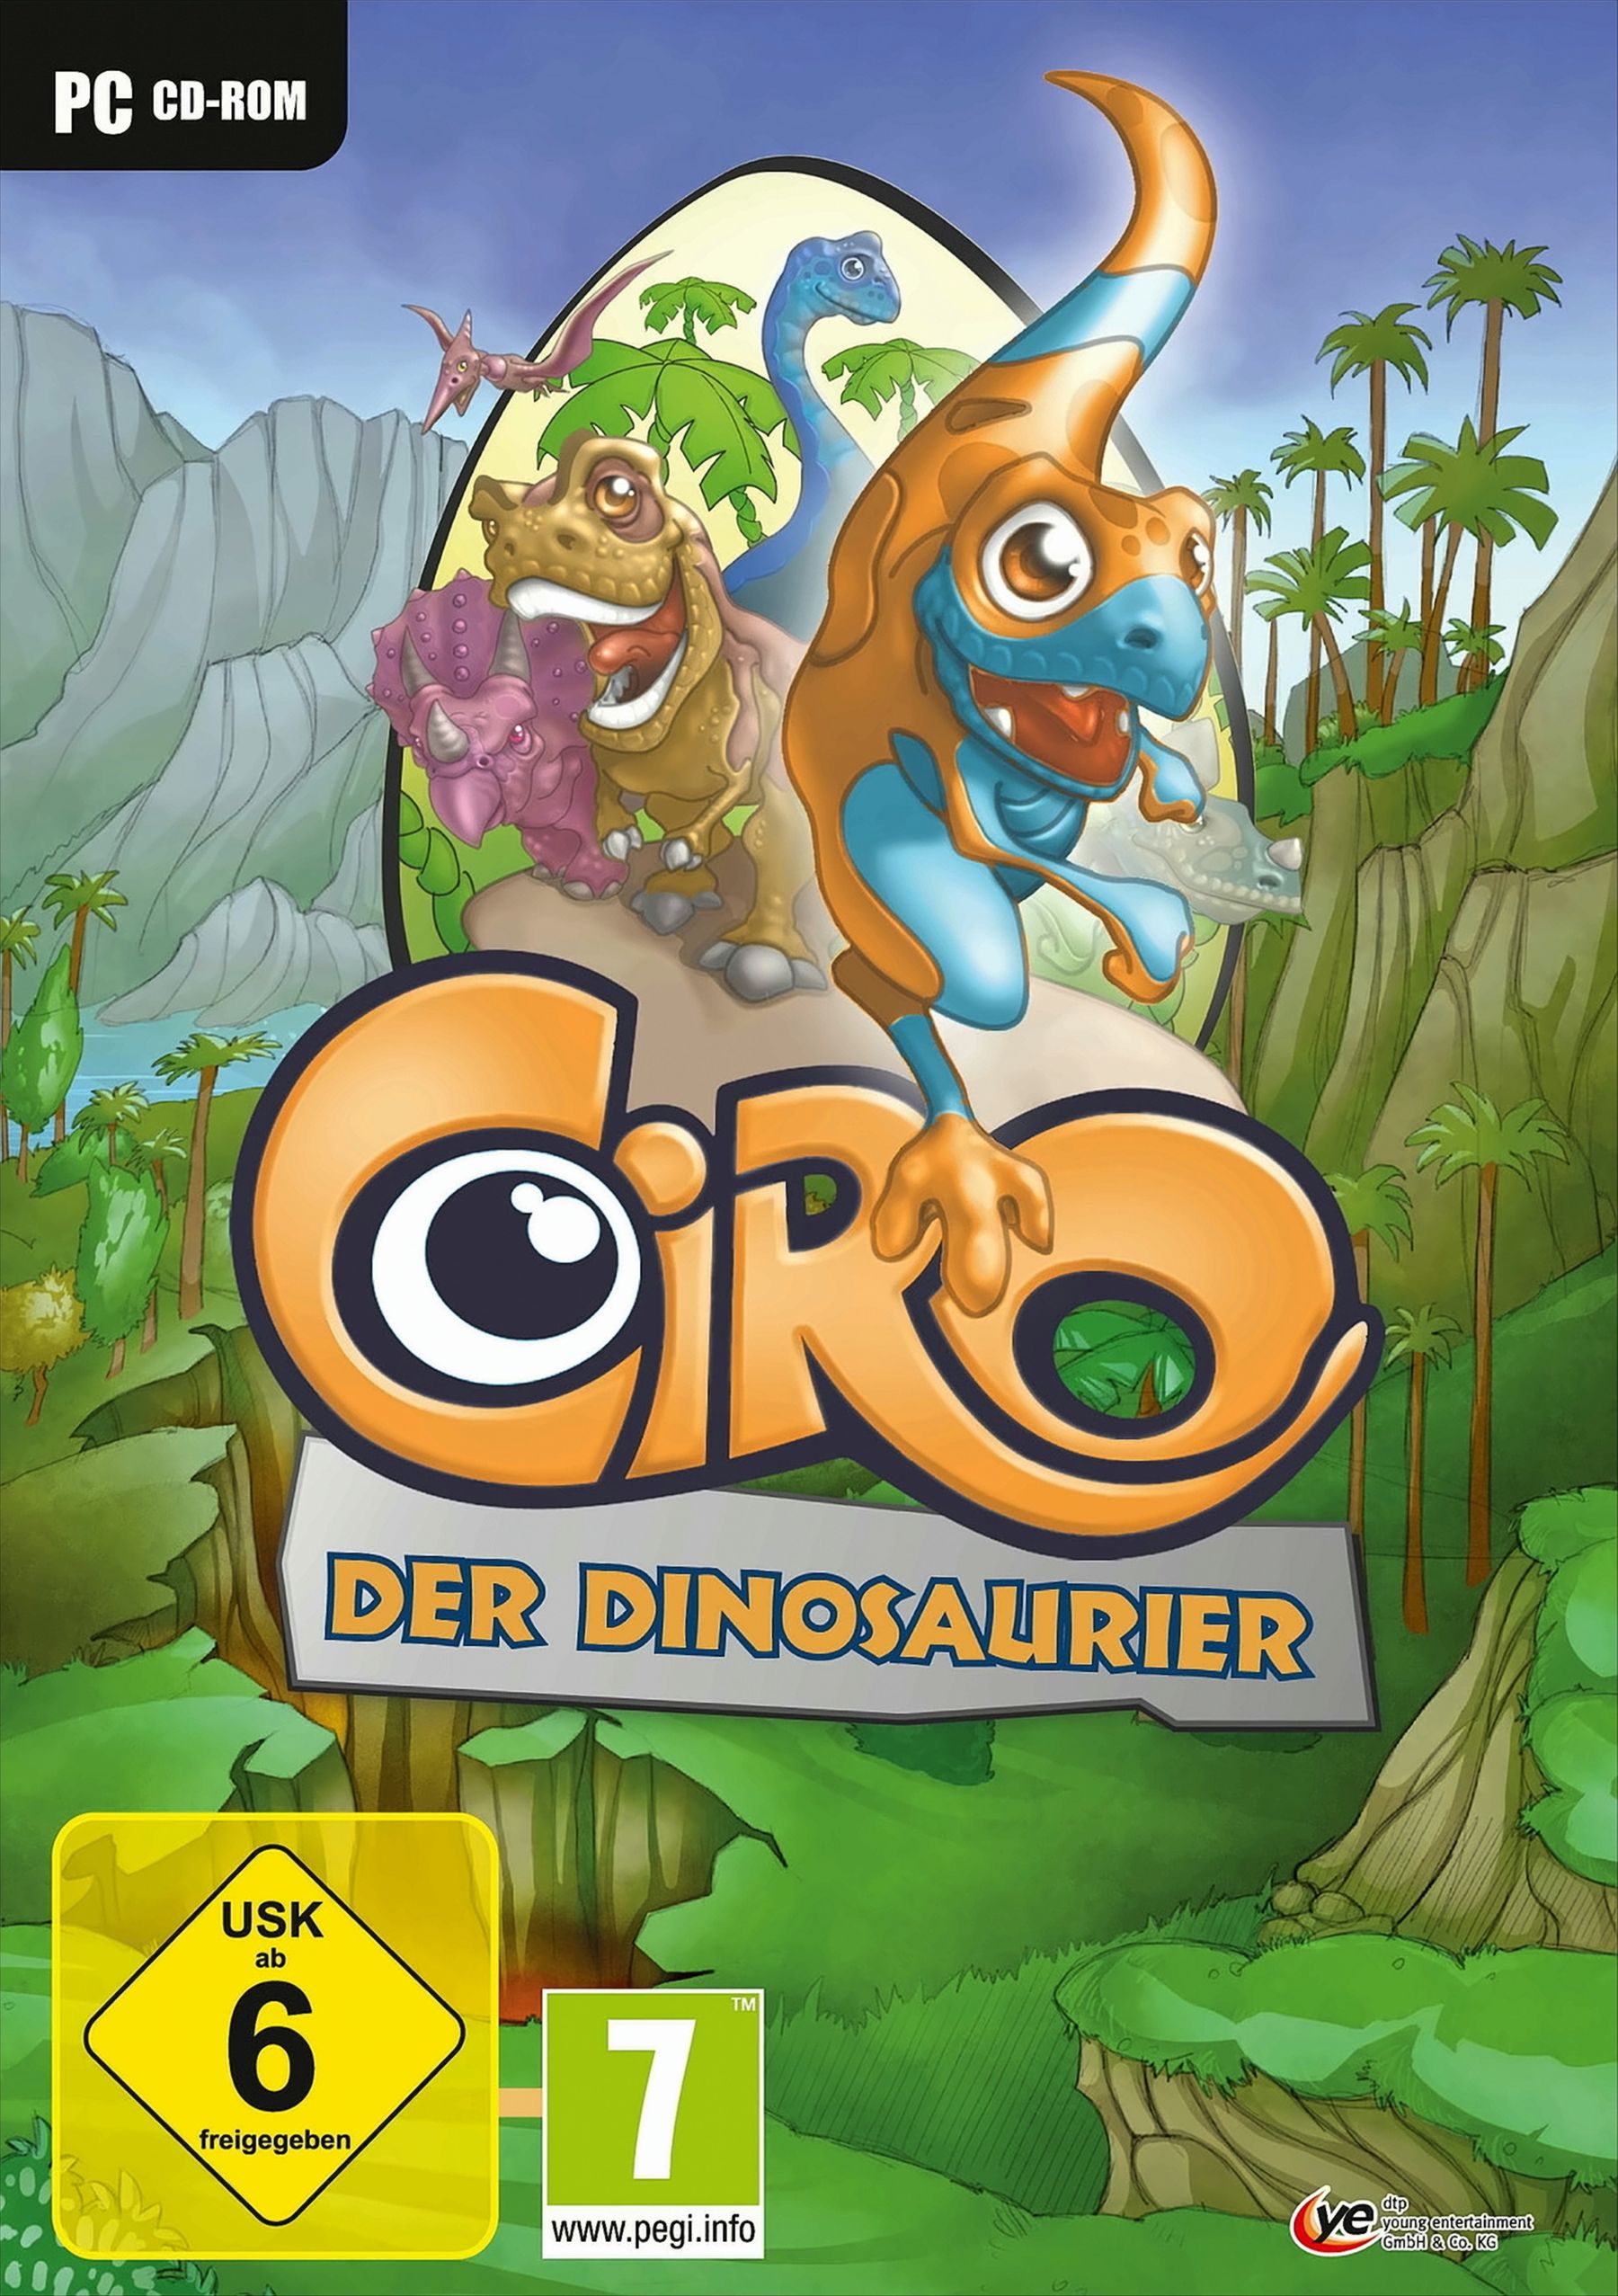 Ciro, der Dinosaurier von Diverse